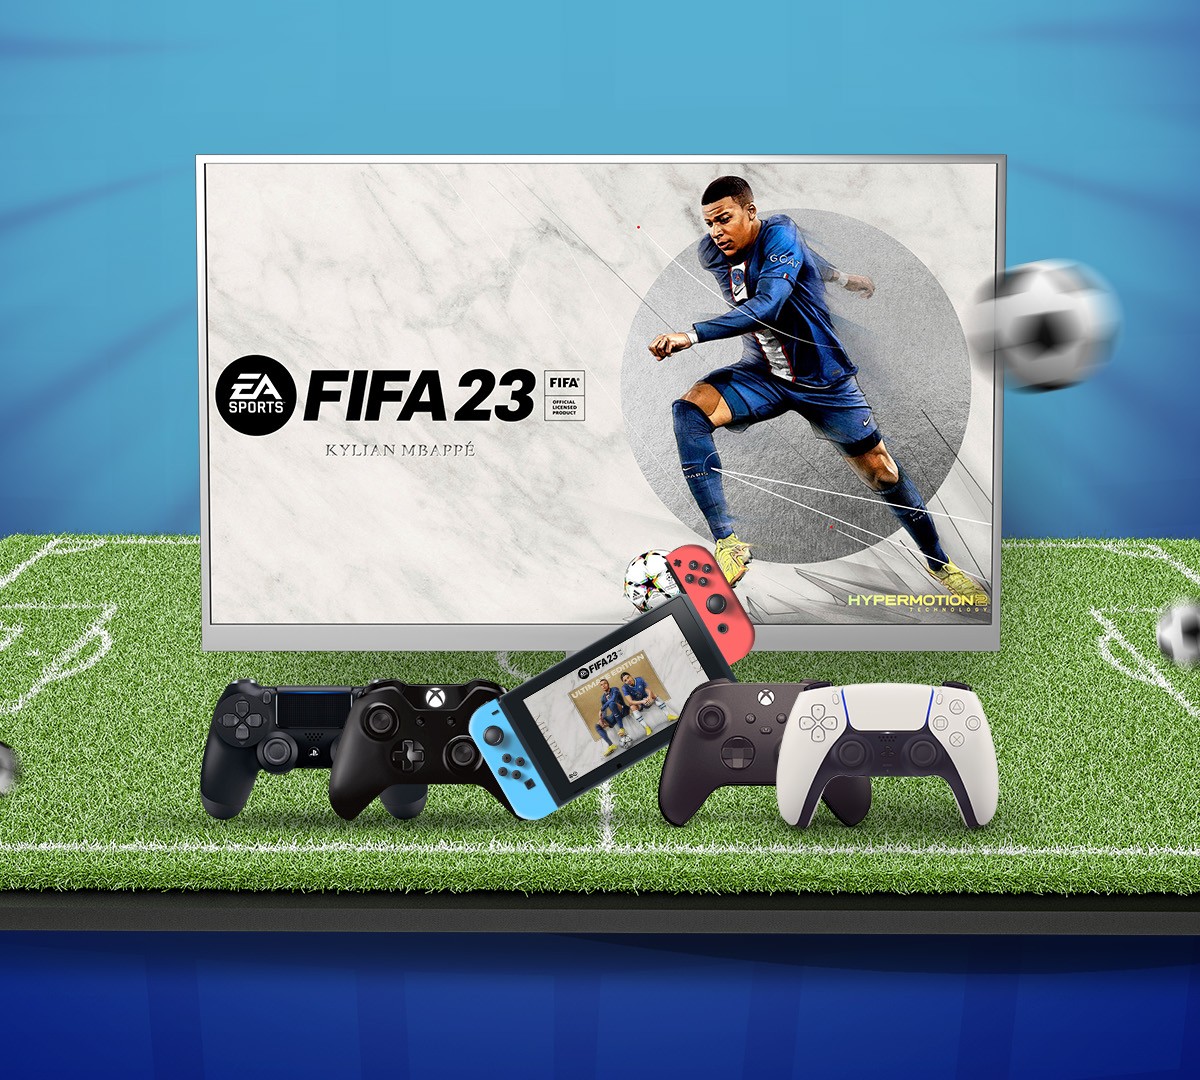 FIFA 23 - Como jogar partidas online com amigos !!! 